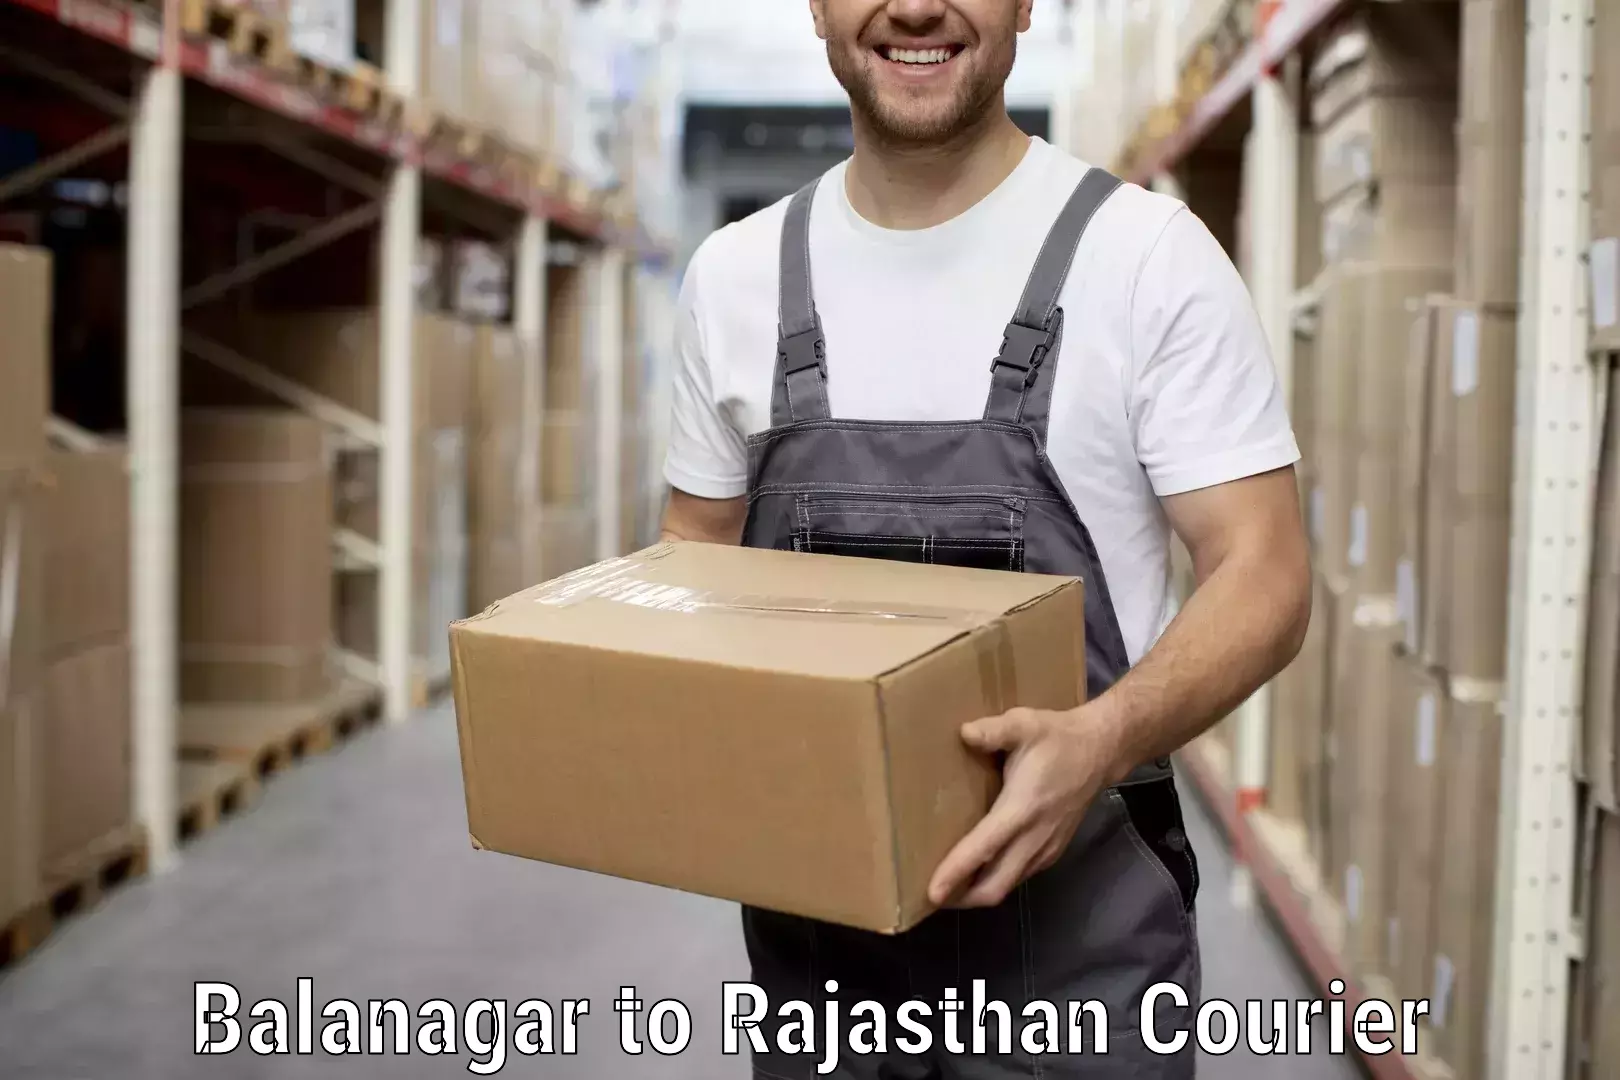 Furniture transport services Balanagar to Rajgarh Rajasthan